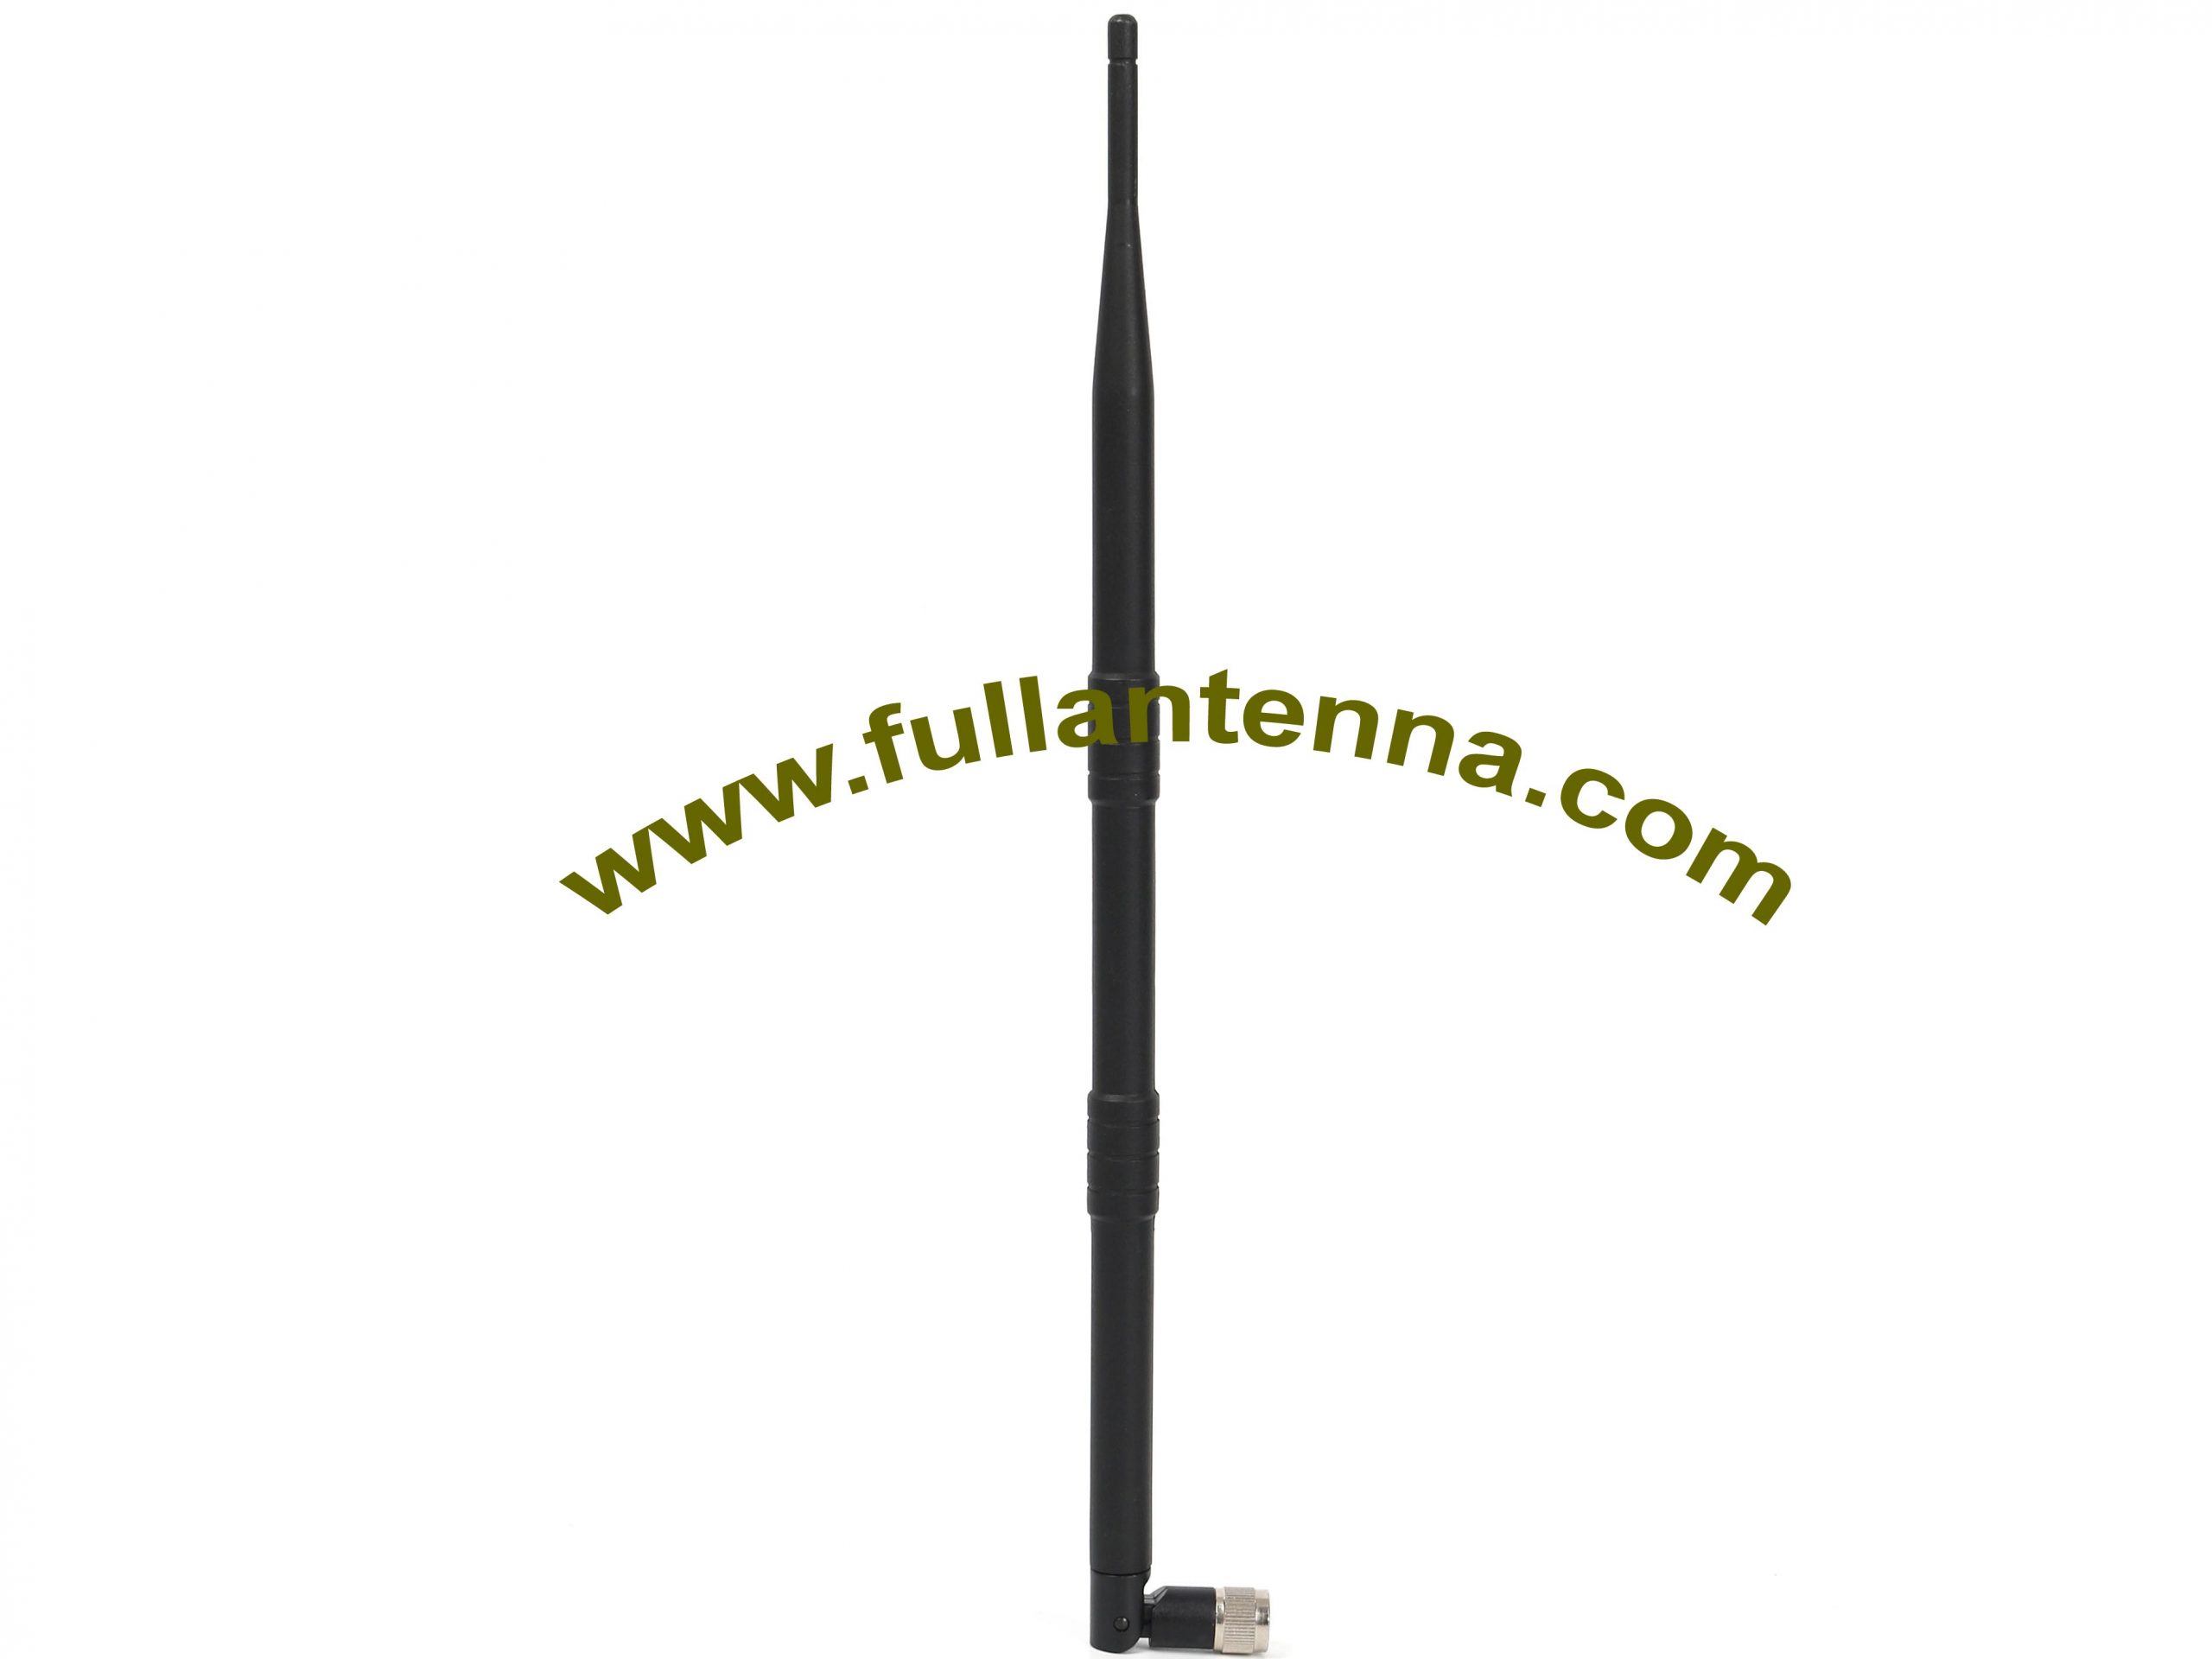 P / N: FA2400.0510, gumowa antena WiFi / 2.4G, zysk 2400-2500 MHz 10dbi zysk